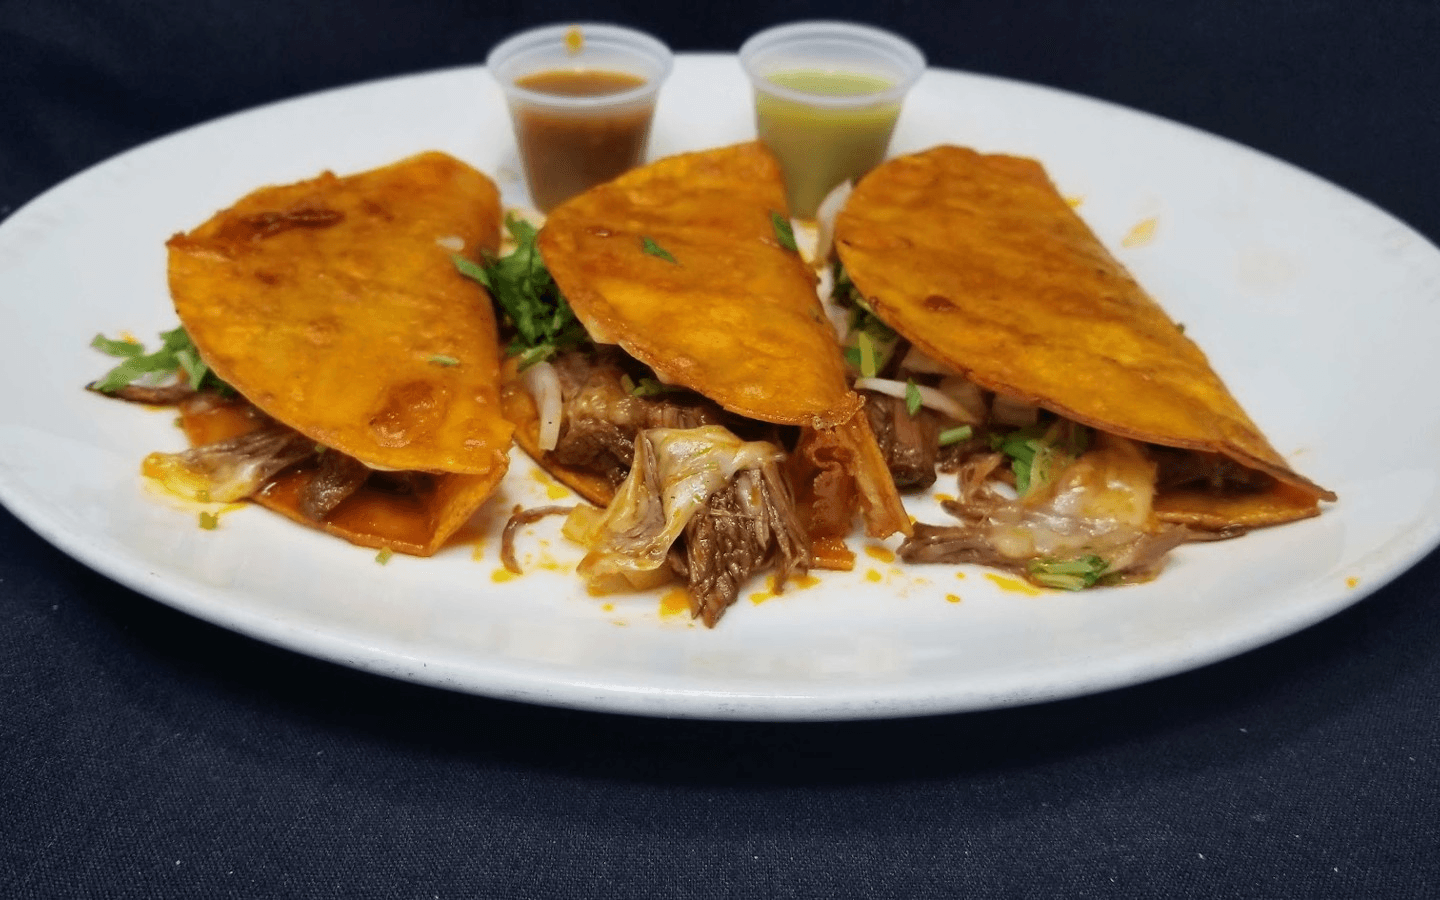 Fiesta Tequila Mexican Restaurant & Bar Rewards